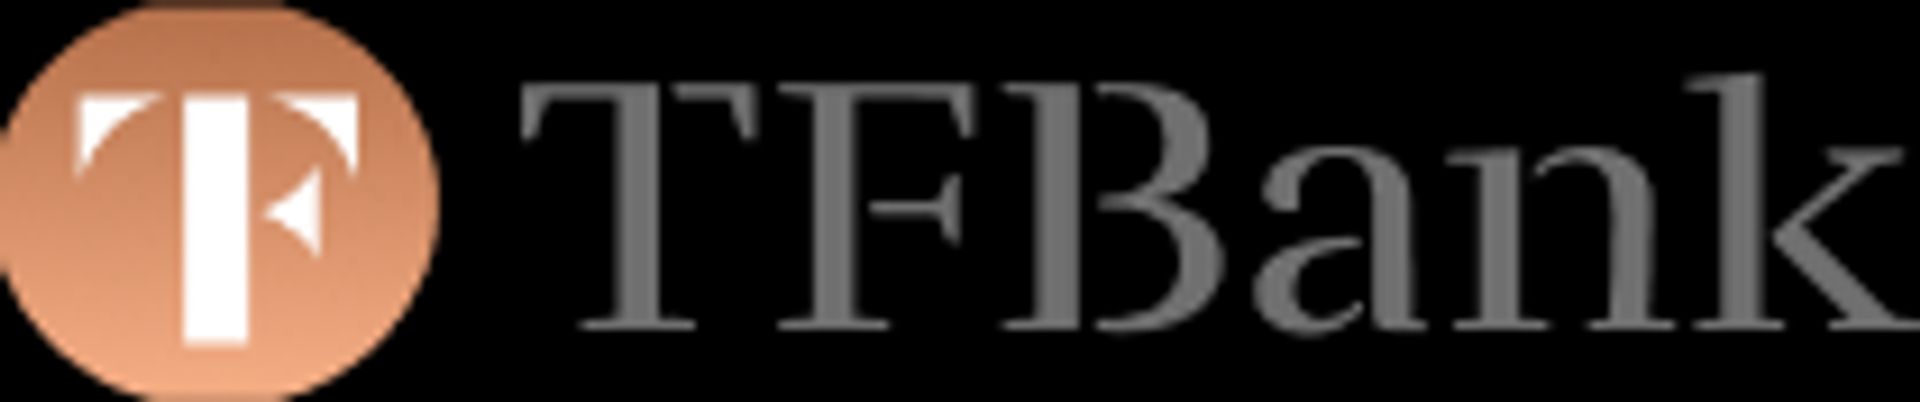 TFBank logga i grå färg